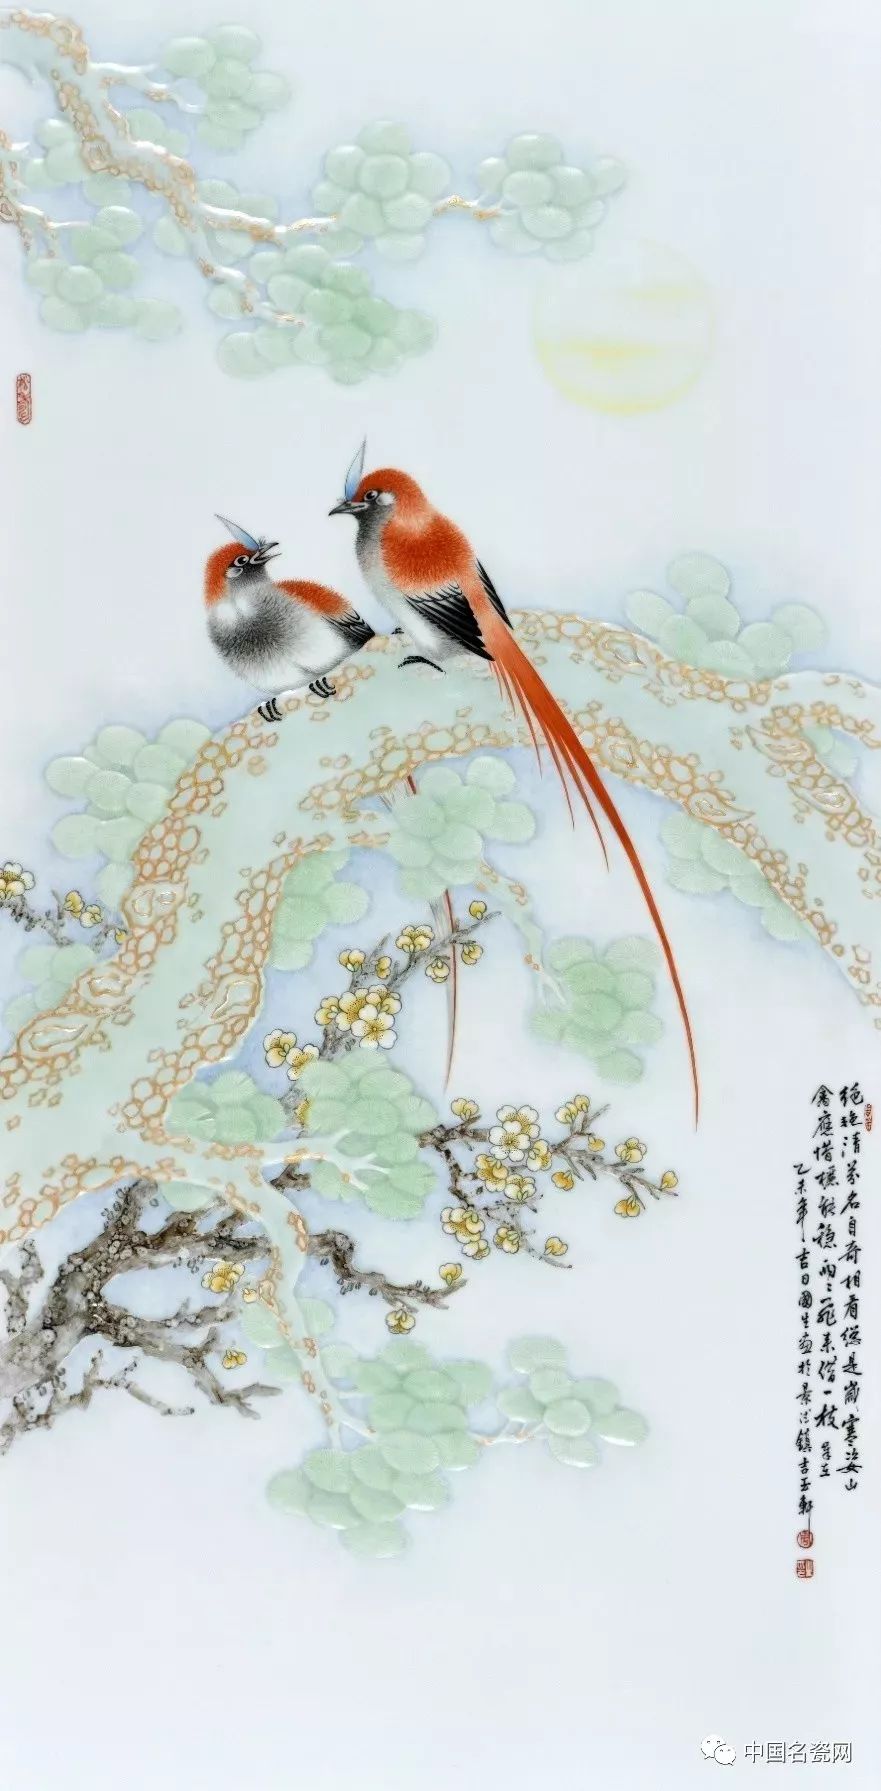 勾线袁少辉 瓶花落砚香归字 瓷板粉彩花鸟画是在吸收工笔国画的绘制